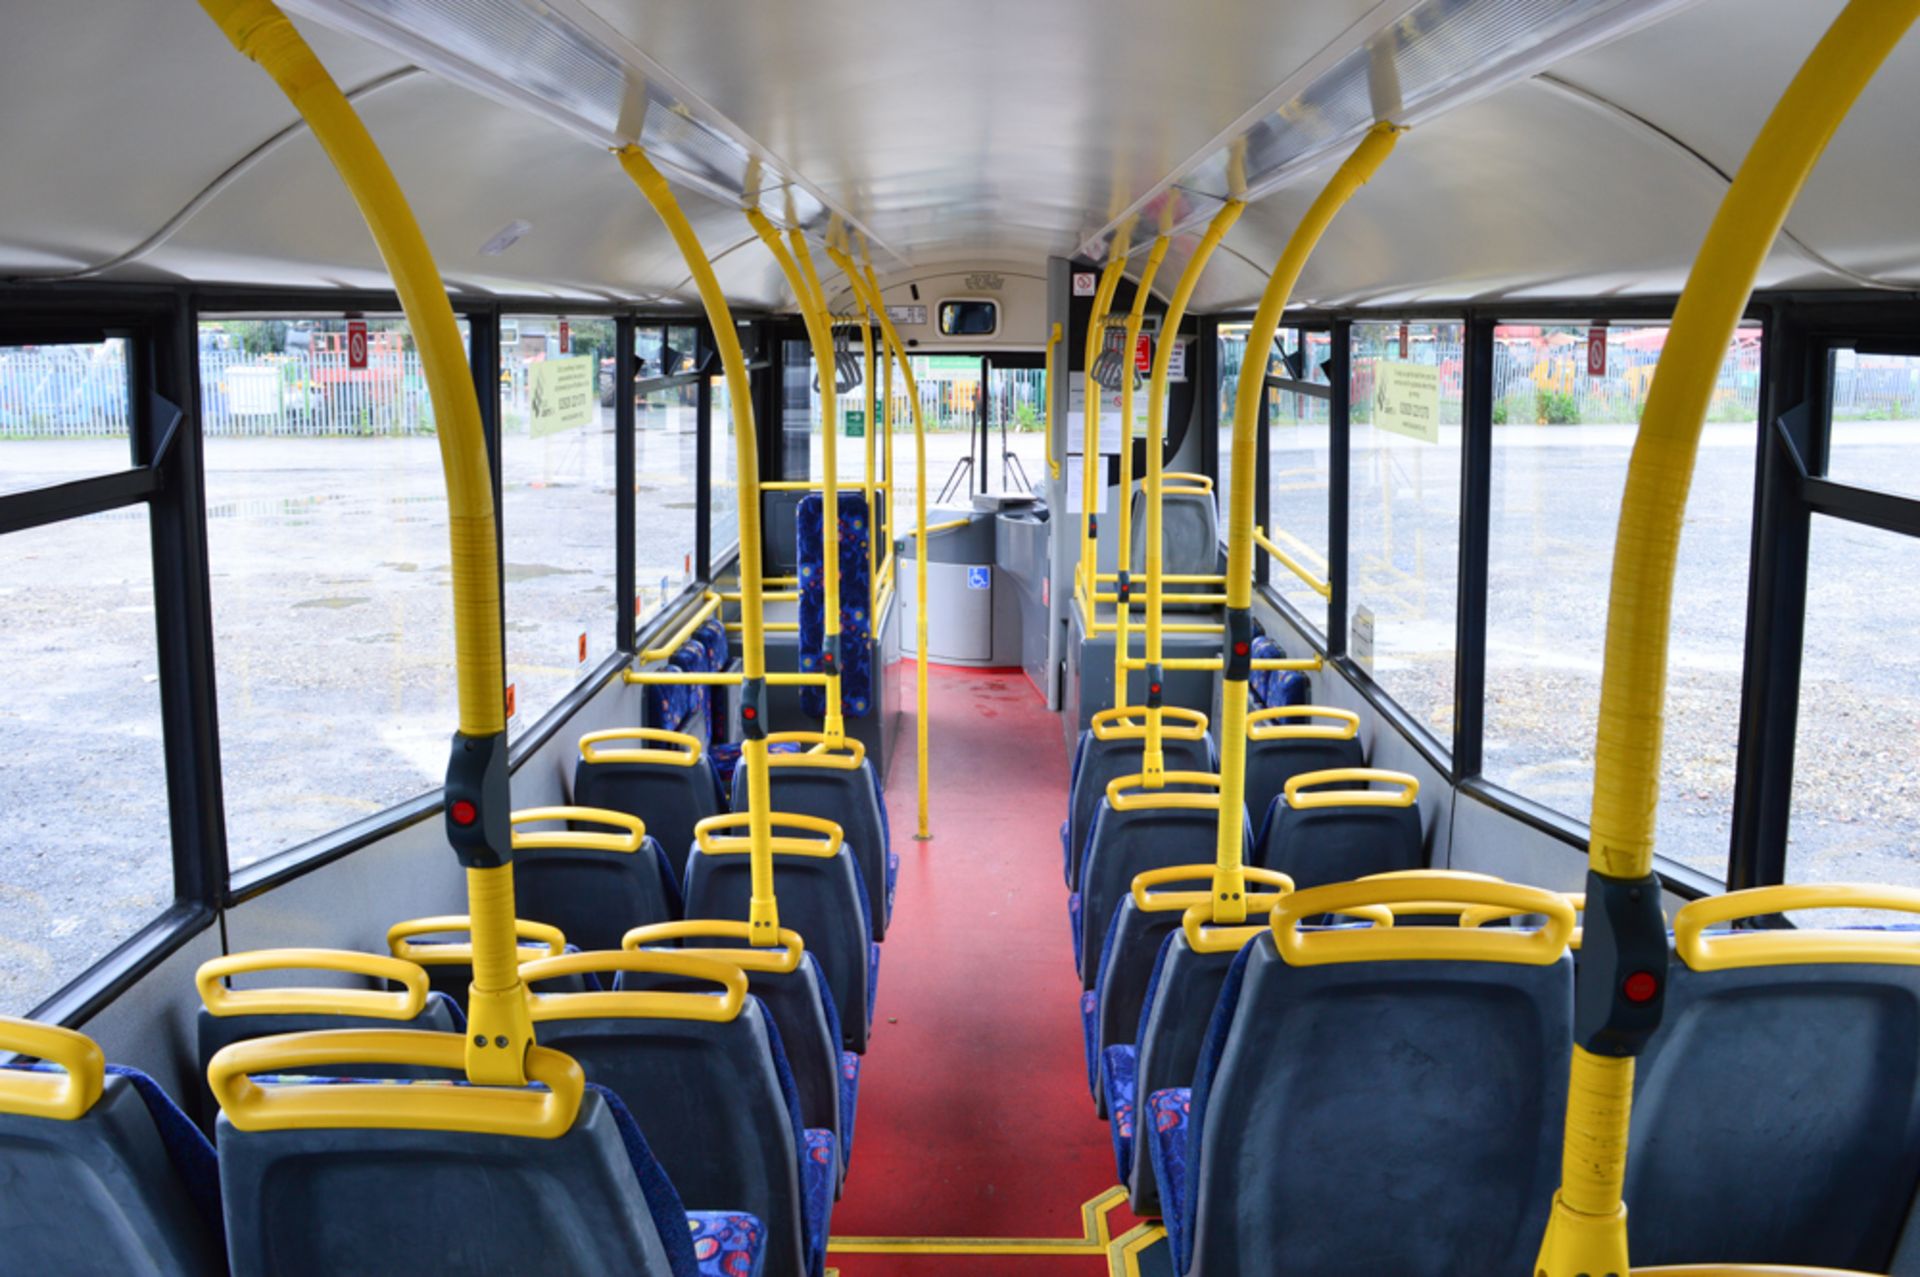 MAN MCV Evolution F2000 40 seat service bus Registration Number: CU05 DME Date of registration: 01/ - Image 8 of 10